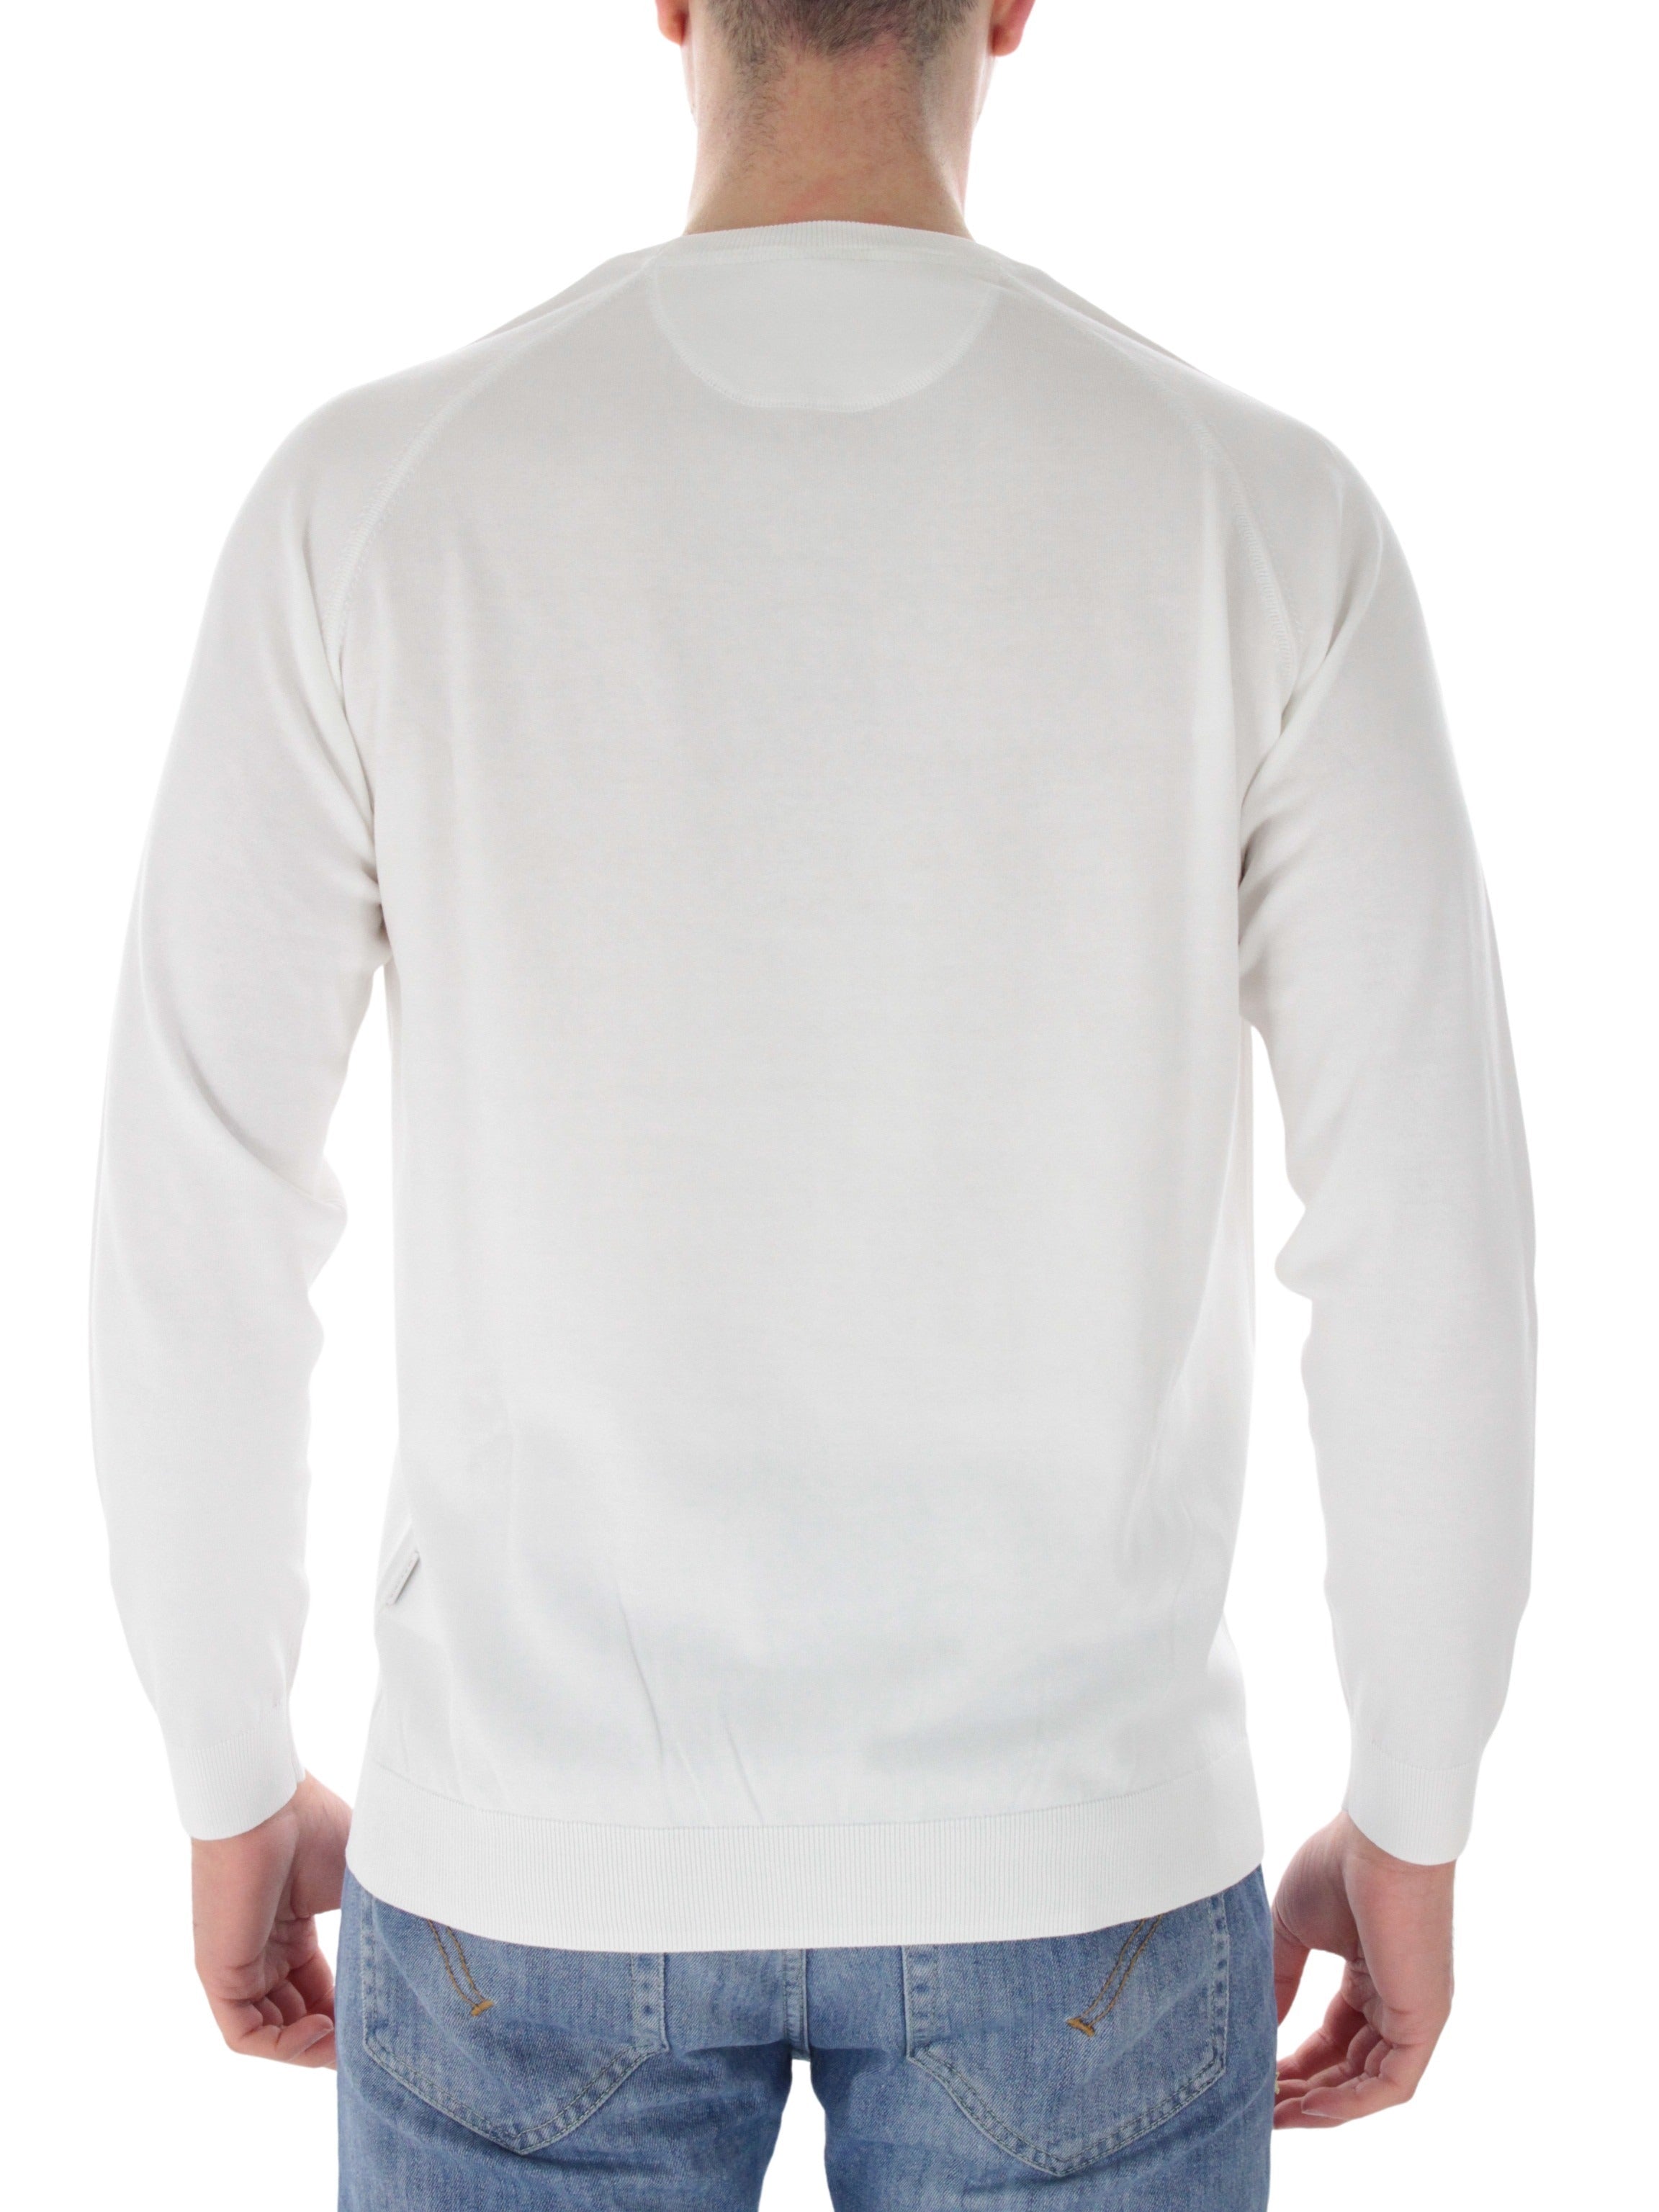 Araki C16 white lap shirt